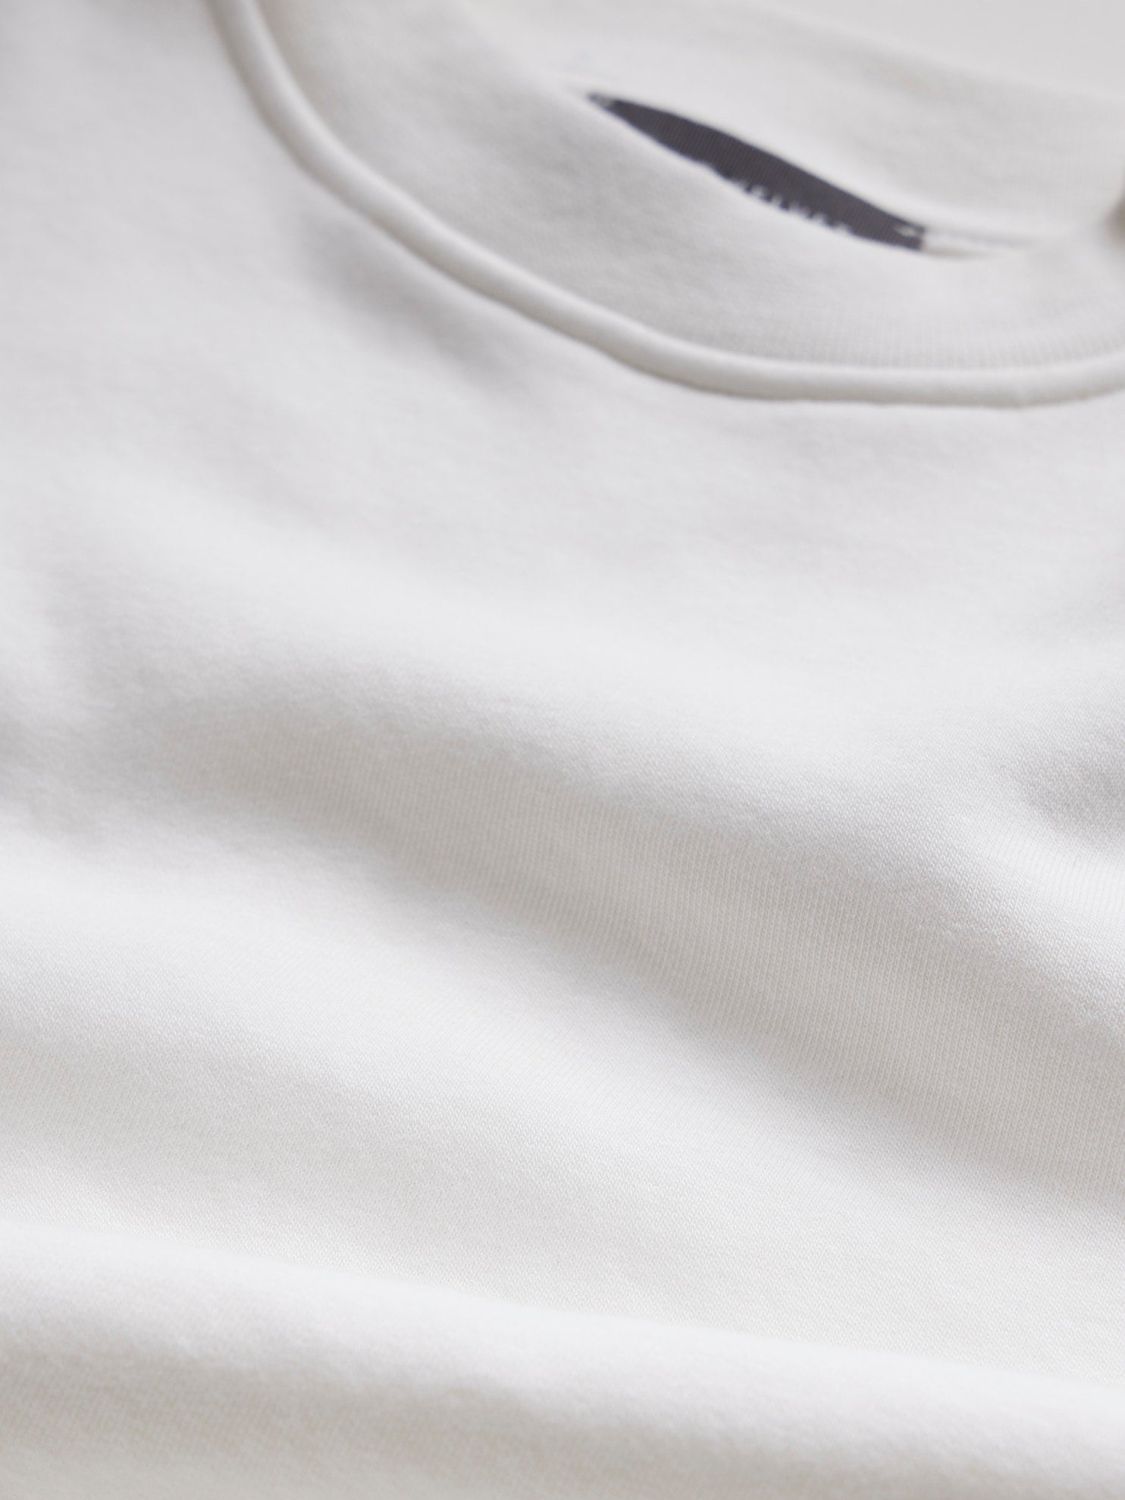 Mint Velvet Extended Shoulder Sweatshirt, White, XS